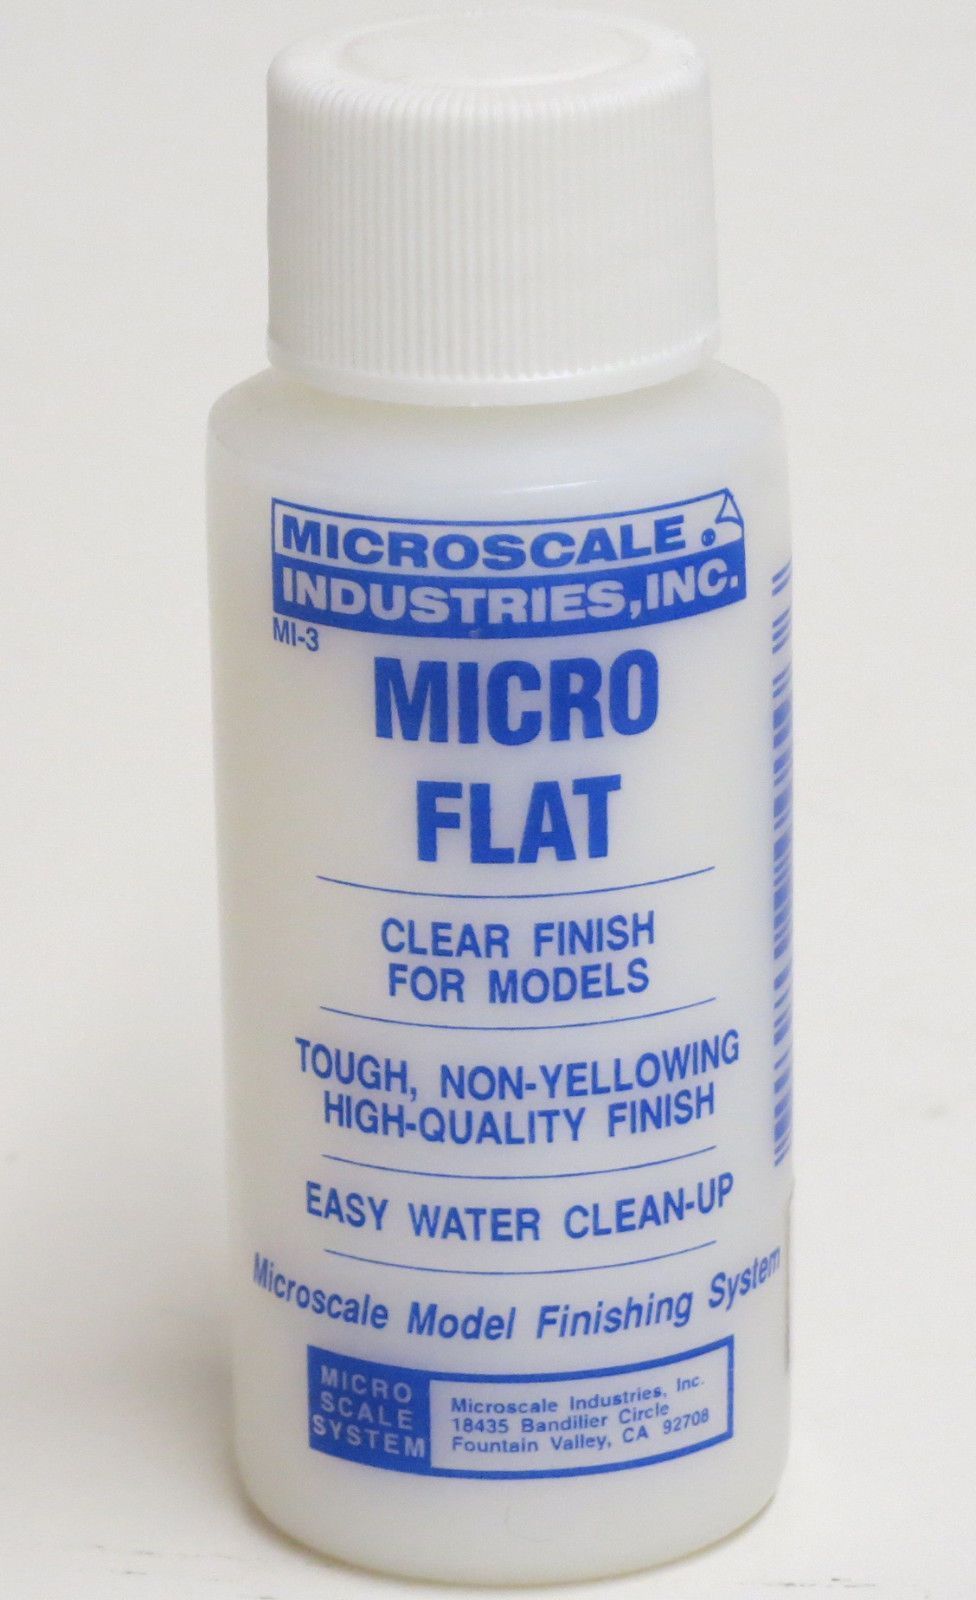 Microscale MI-3 Micro Flat Clear Finish 1 oz.